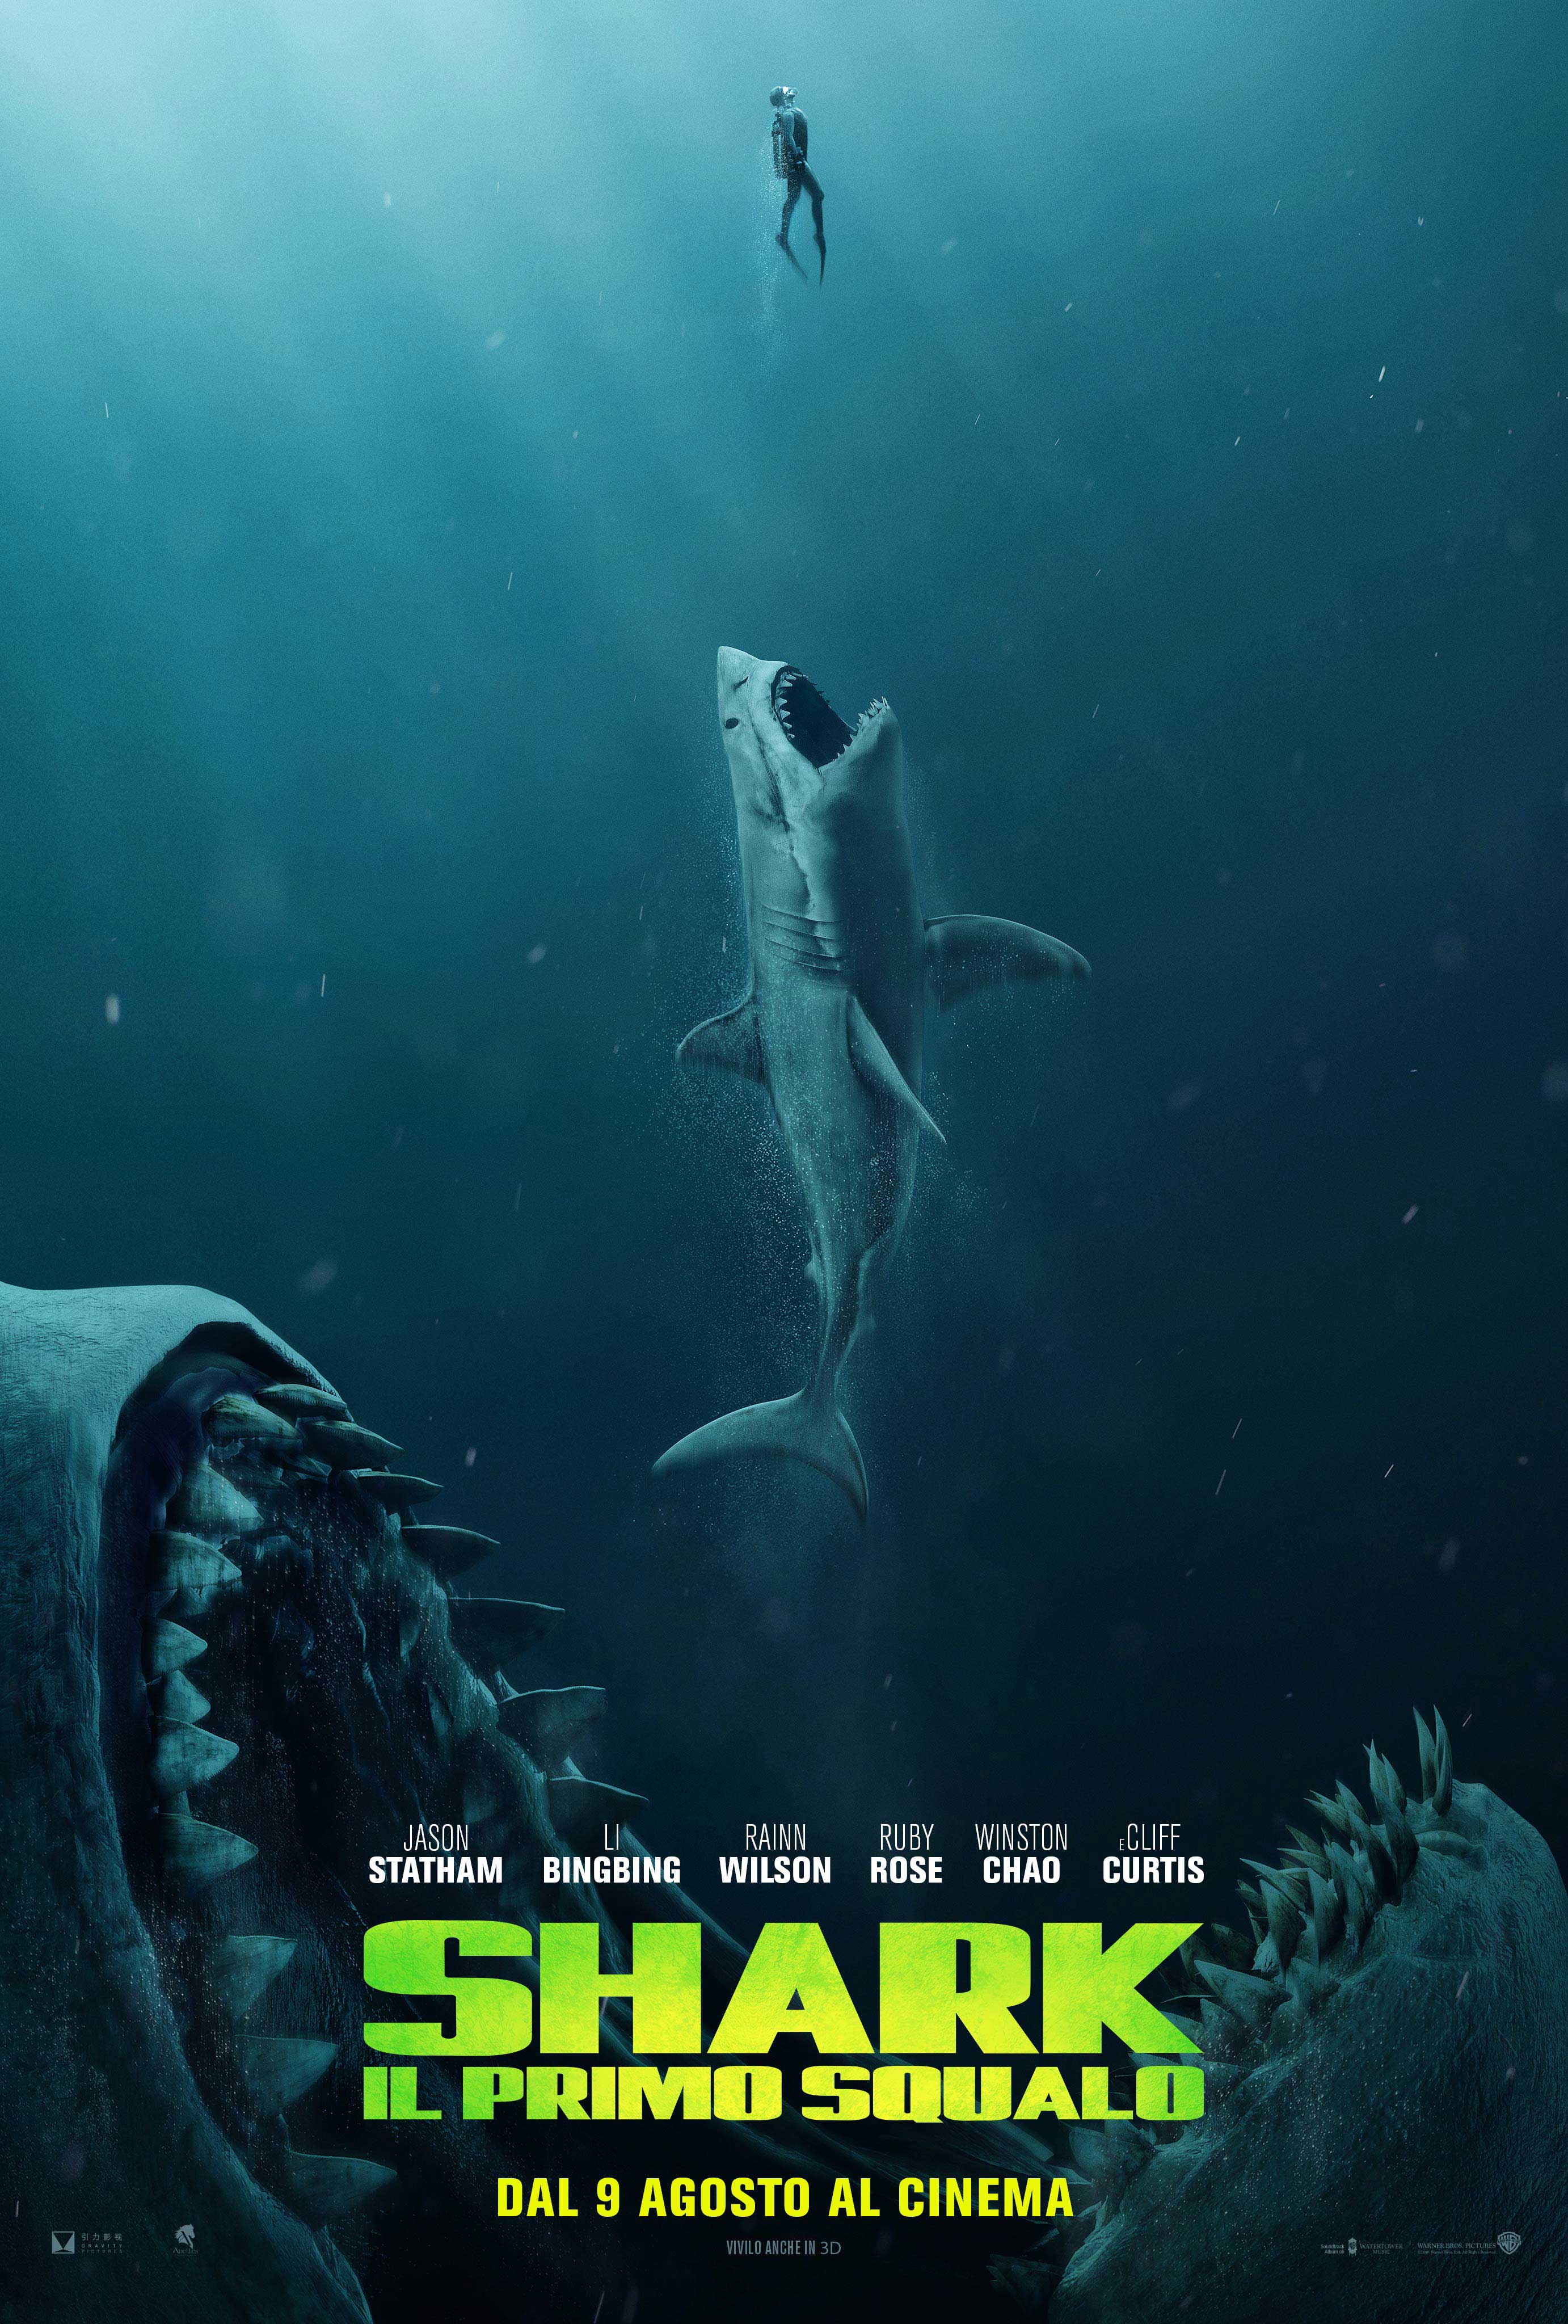 Shark – Il primo squalo, trailer ufficiale italiano e poster